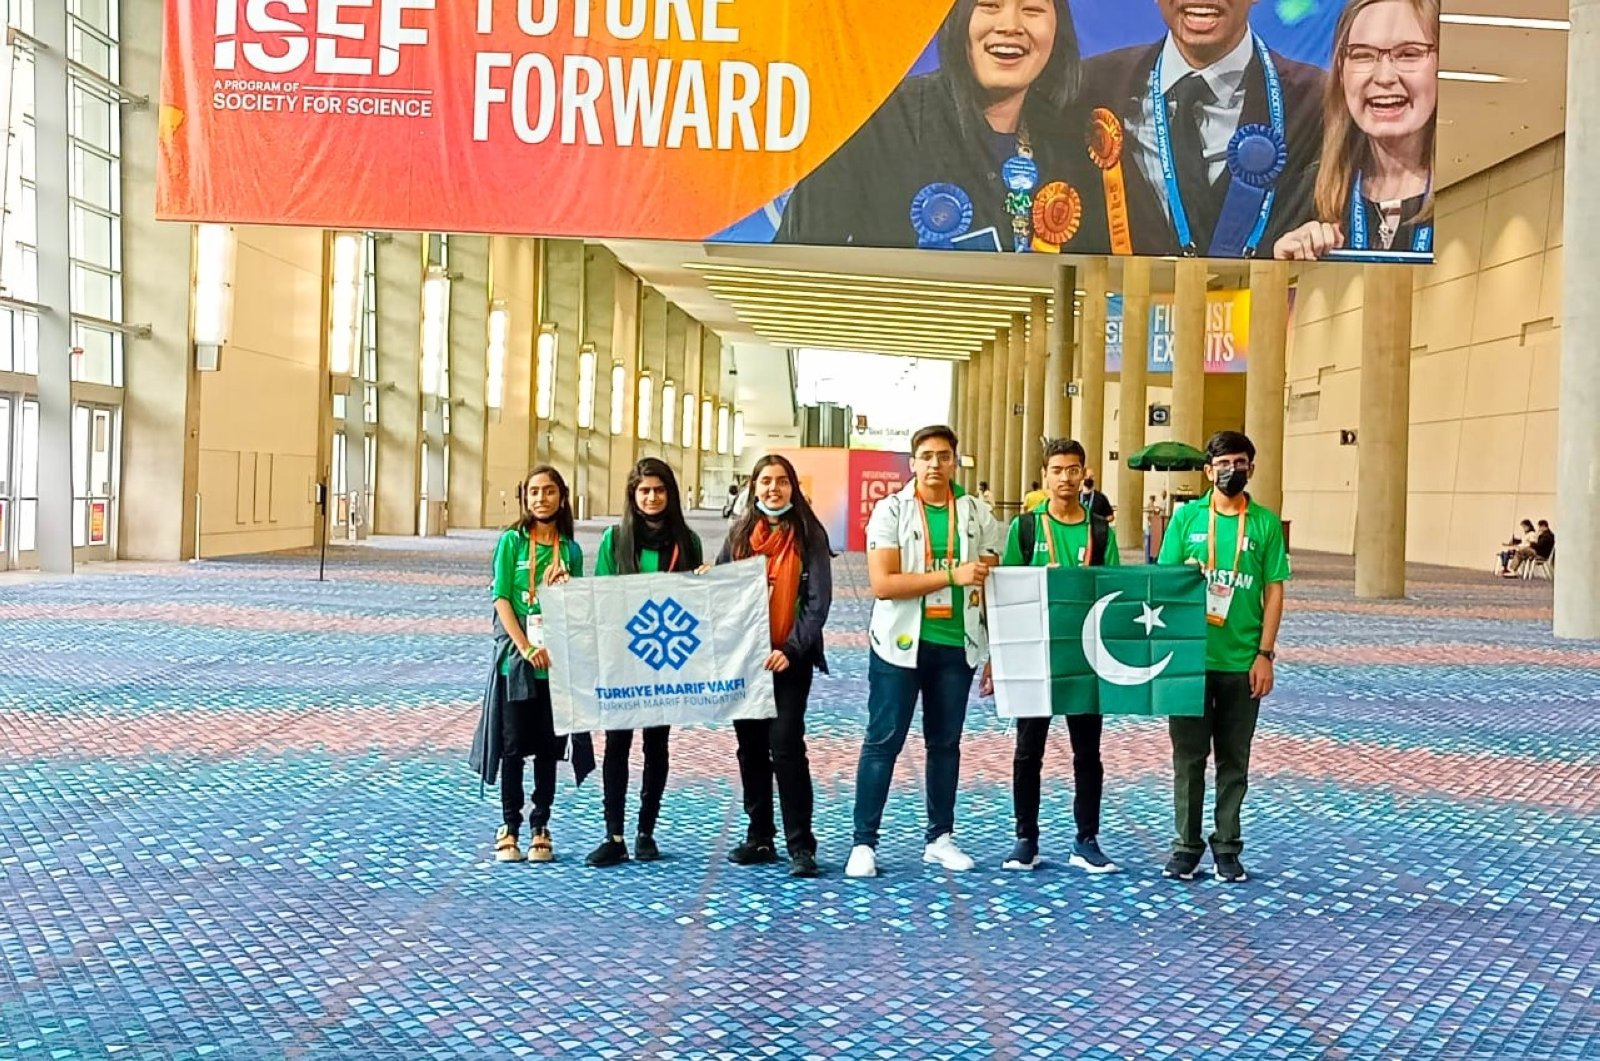 Siswa sekolah Maarif Pakistan-Turki menjadi juara dunia dalam kompetisi sains